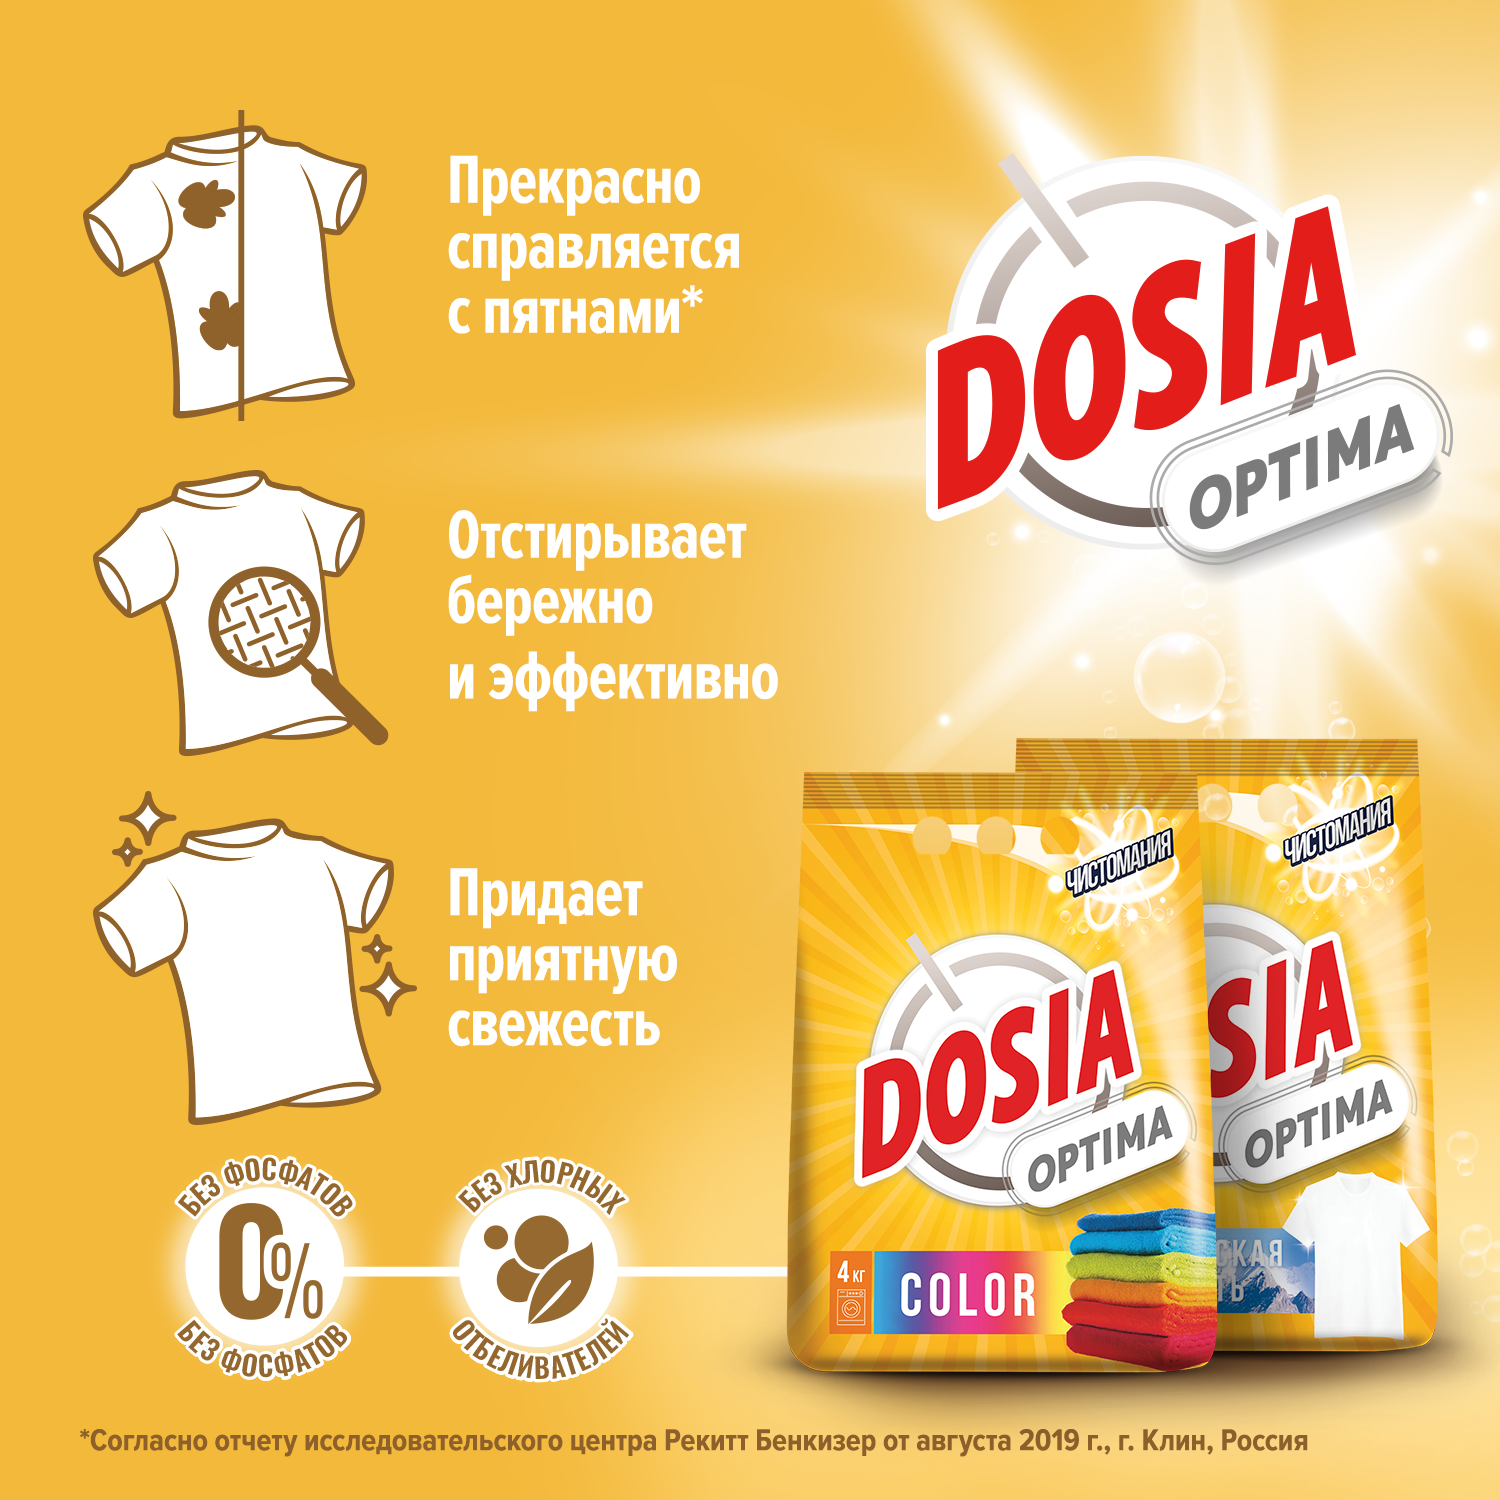 Порошок для стирки Dosia для цветных вещей OPTIMA COLOR 4кг - фото 4